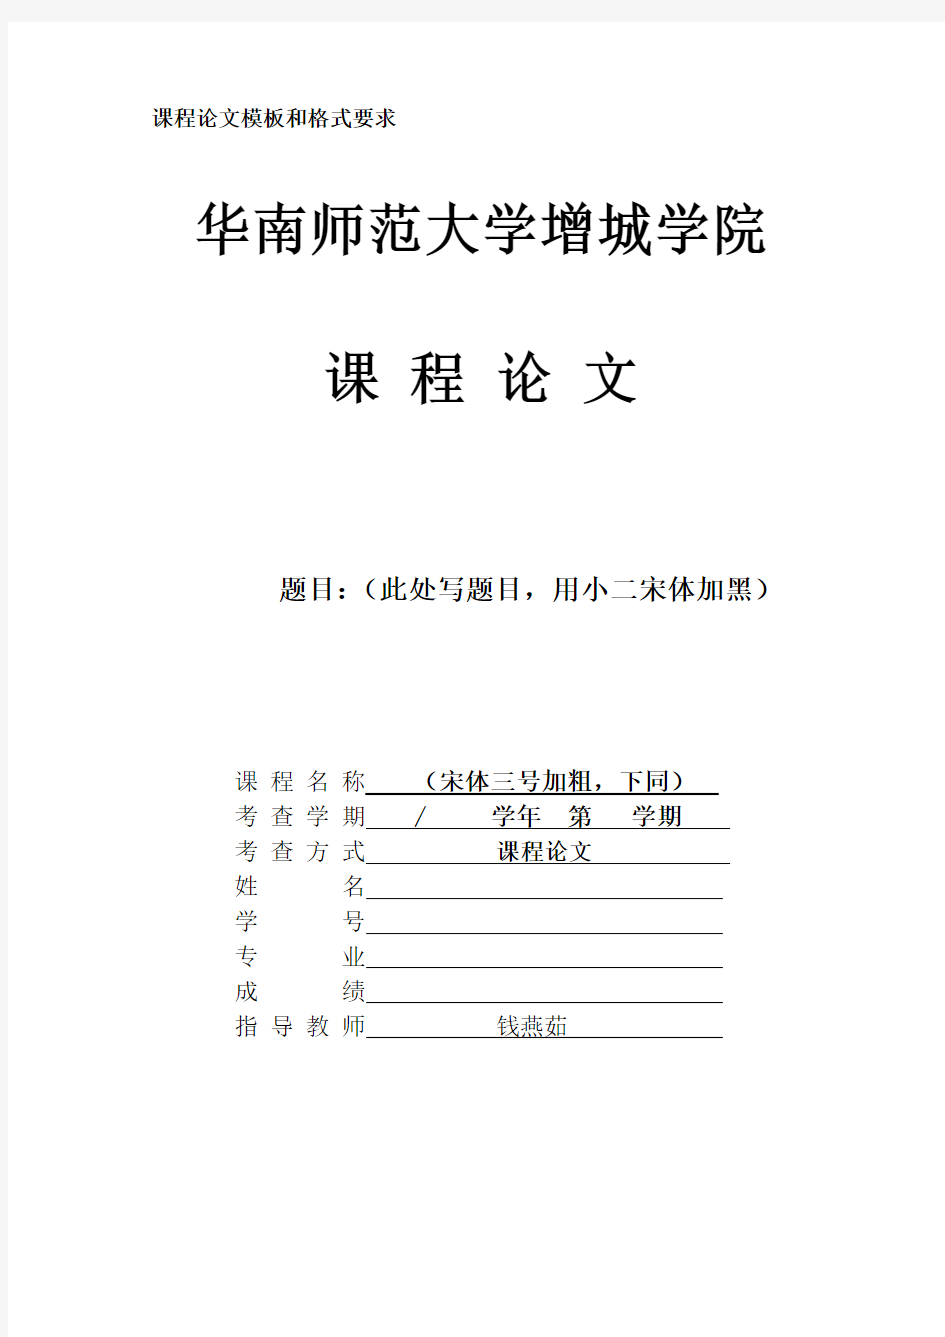 华南师范大学增学院课程论文模板和格式要求